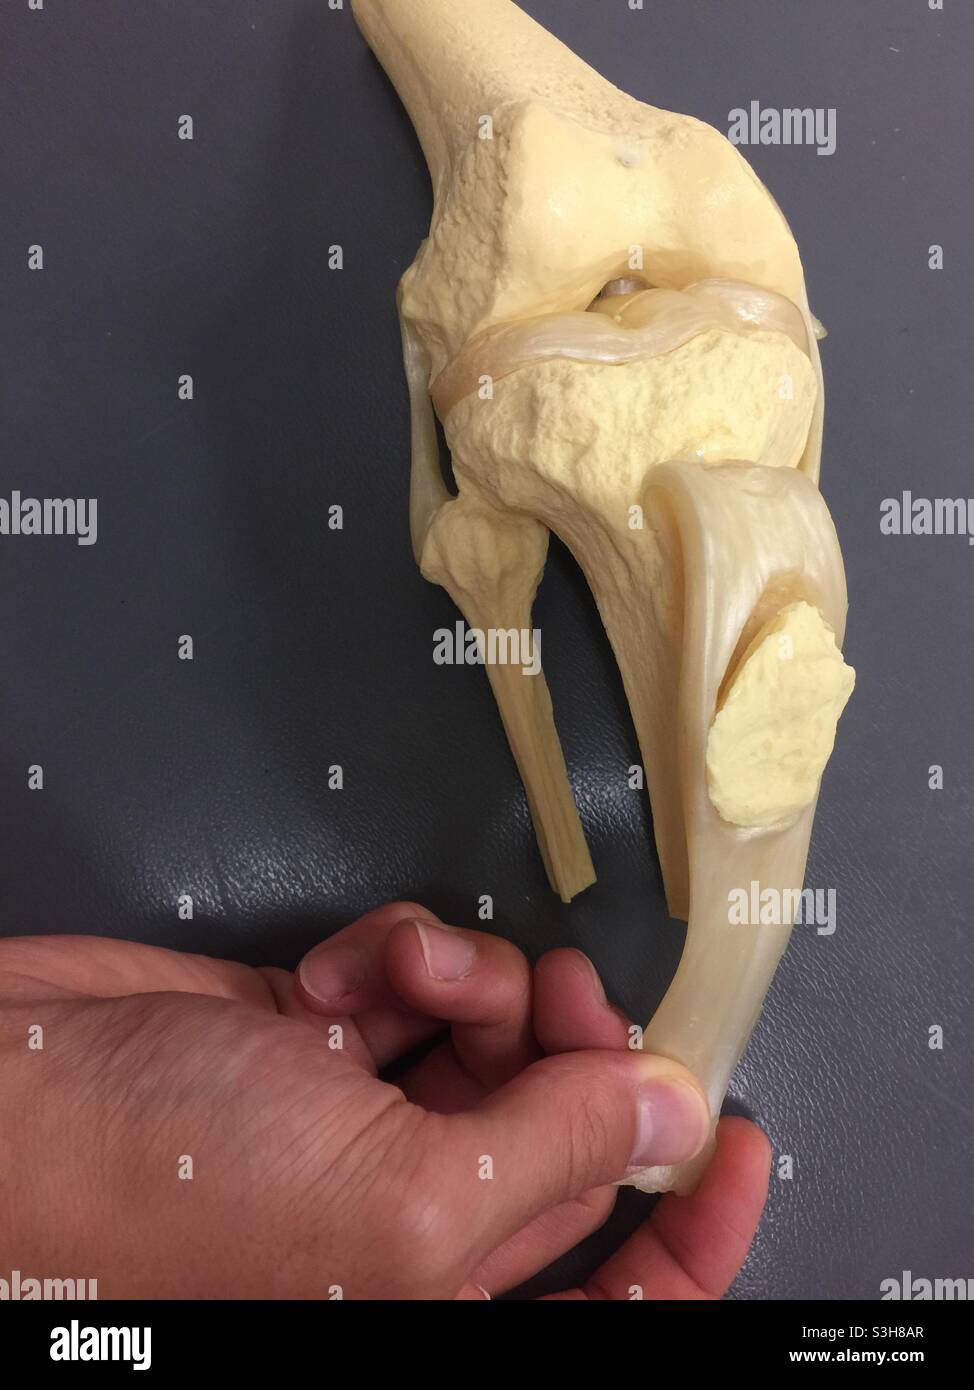 Modello di ginocchio umano che mostra la rotula, il femore, la tibia, la fibula e il menisco. Usato per spiegare la terapia, l'artrite, l'ambulatorio e la consultazione medica. Foto Stock